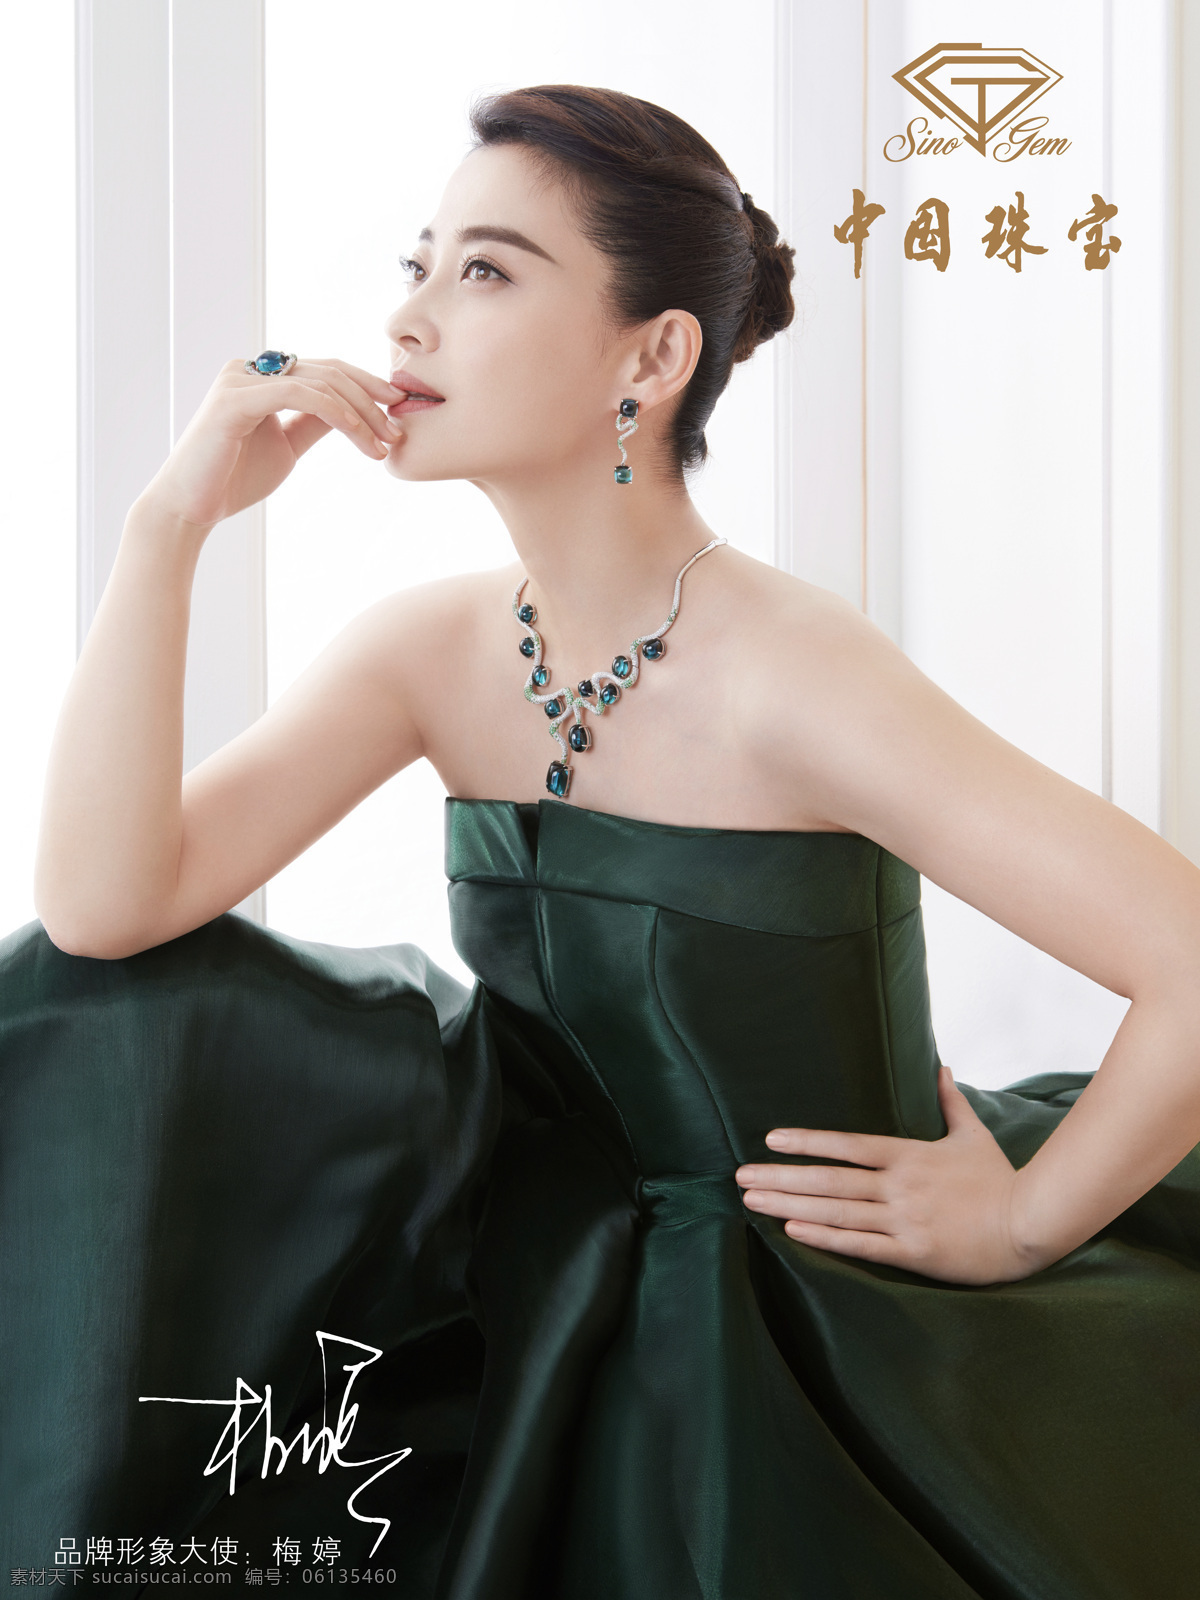 中国珠宝海报 中国珠宝 梅婷 形象大使 灯箱膜